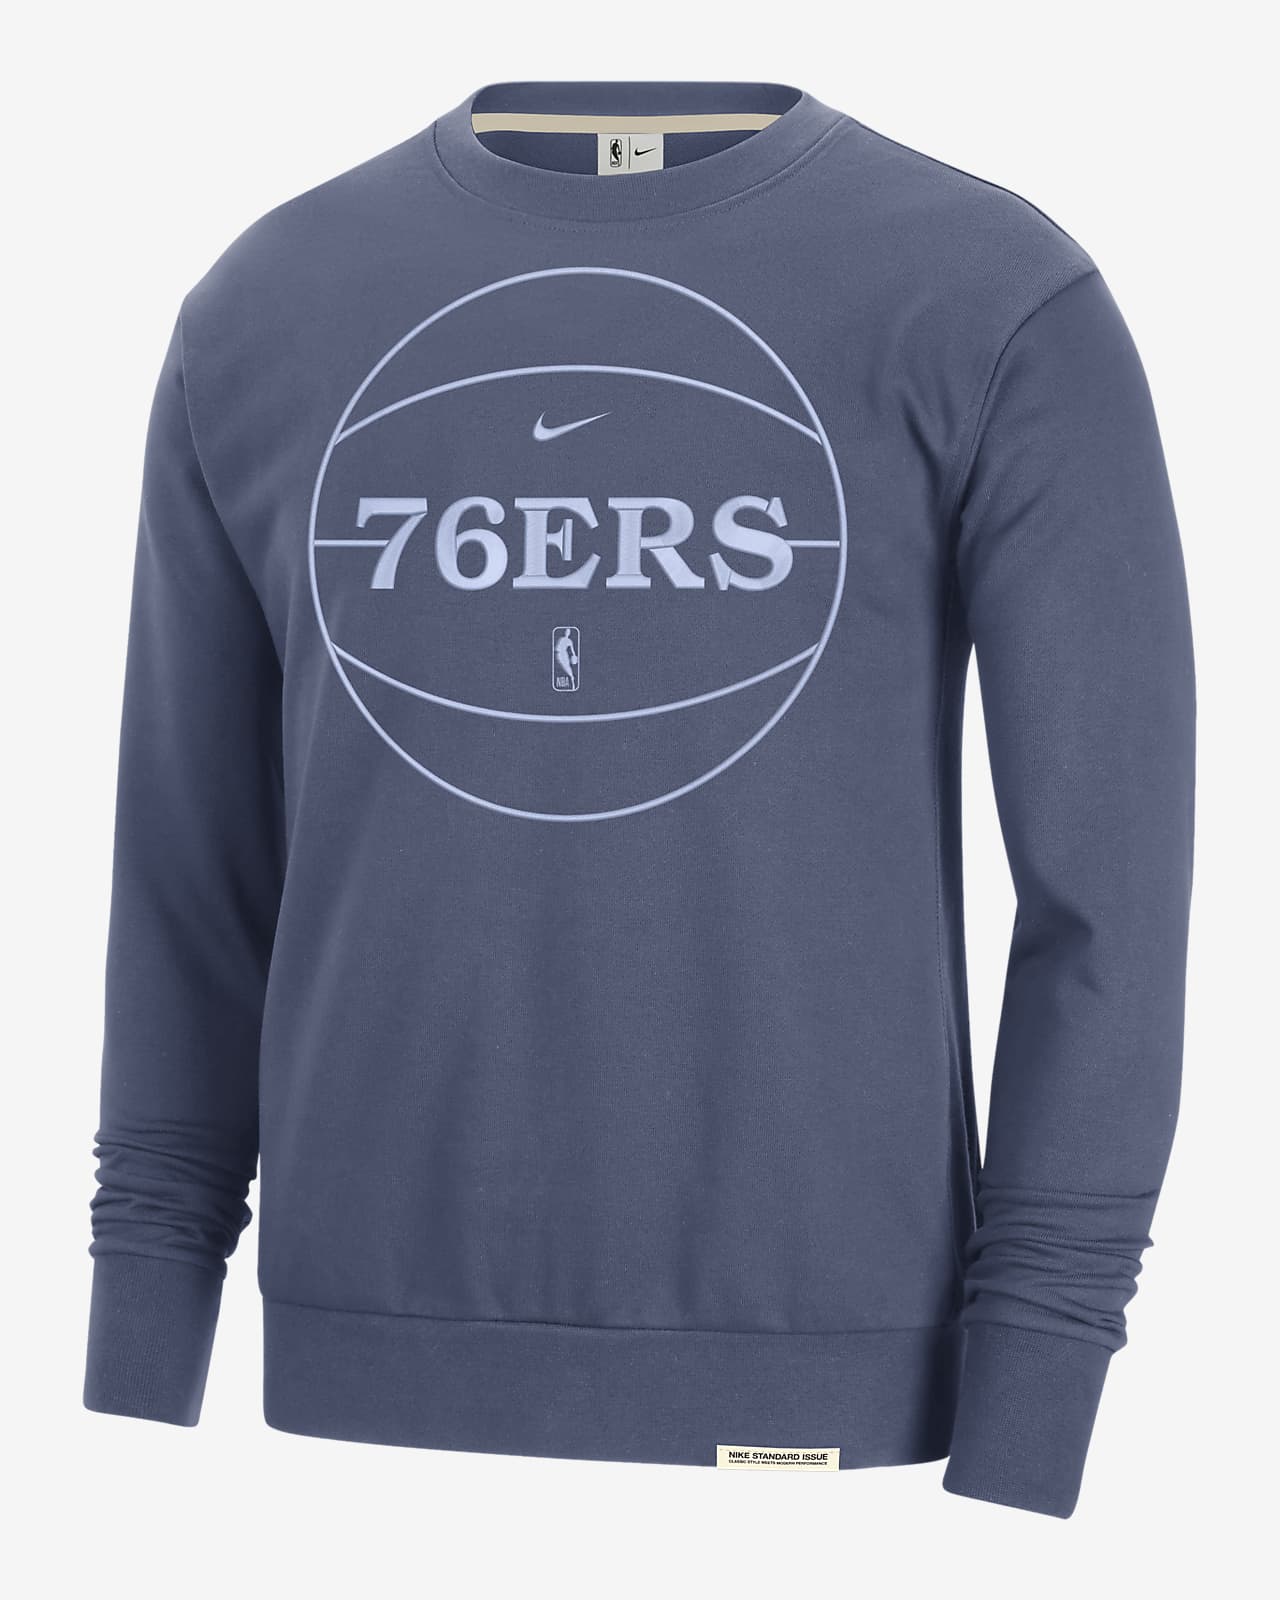 76ers sweatshirt